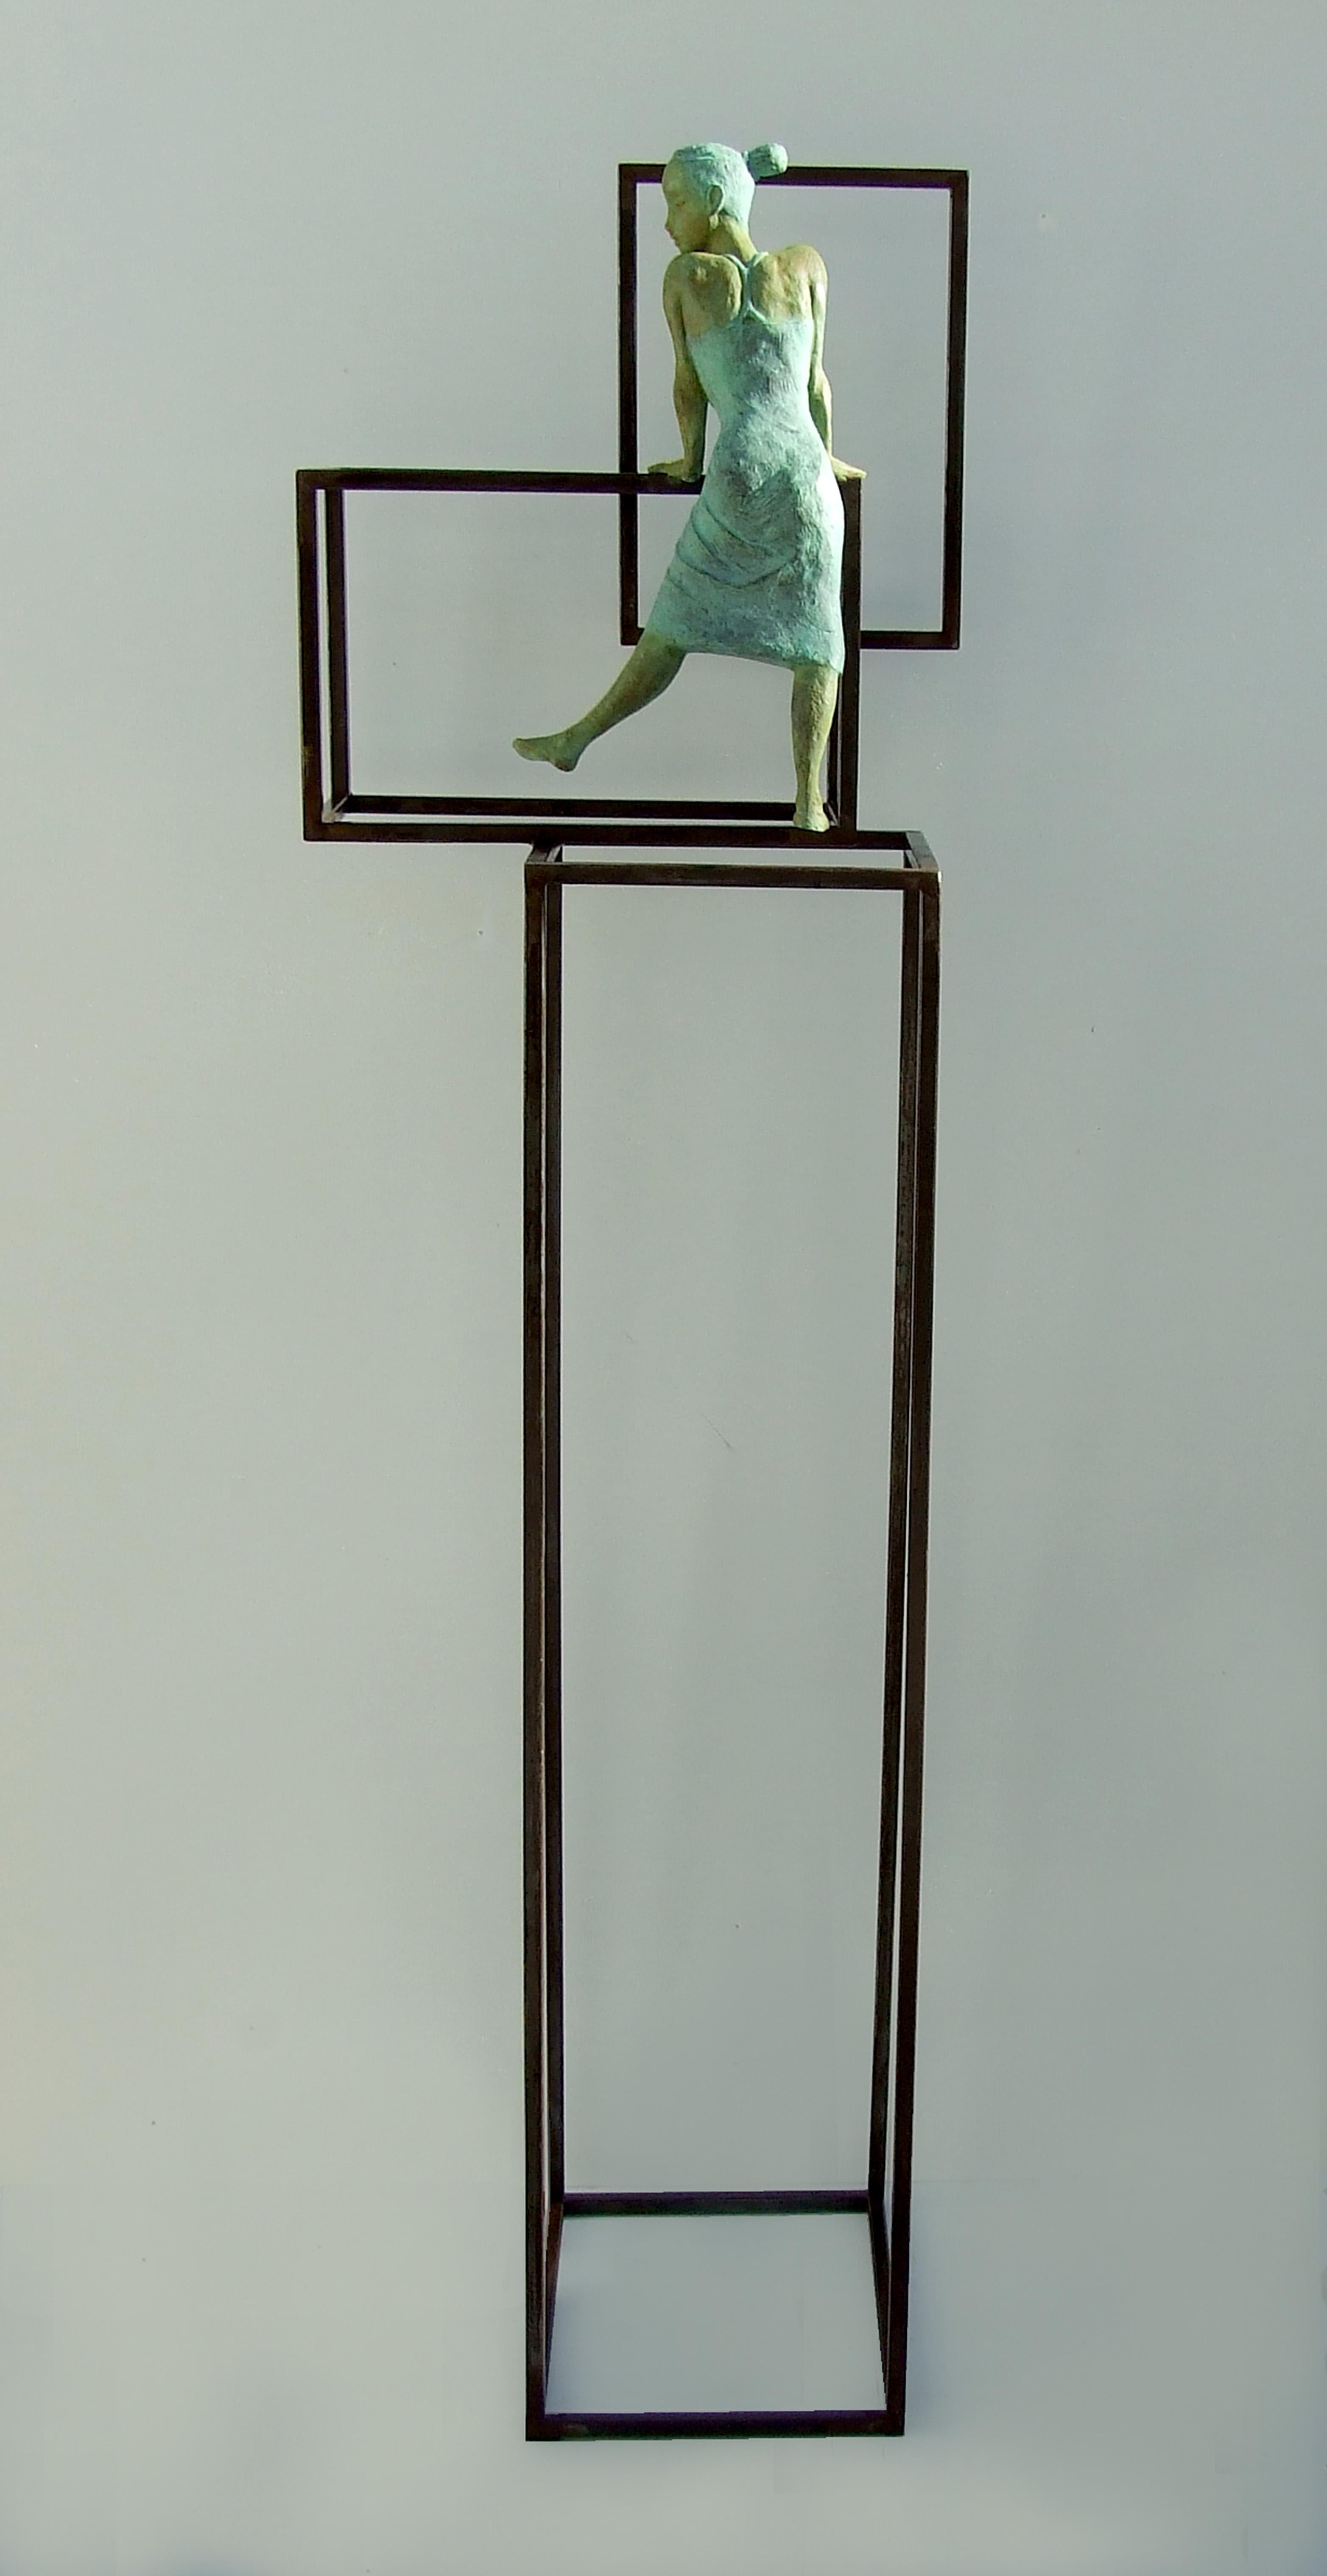 Sculpture de sol contemporaine en bronze « Cuba Salsa » représentant une jeune fille dansant la salsa